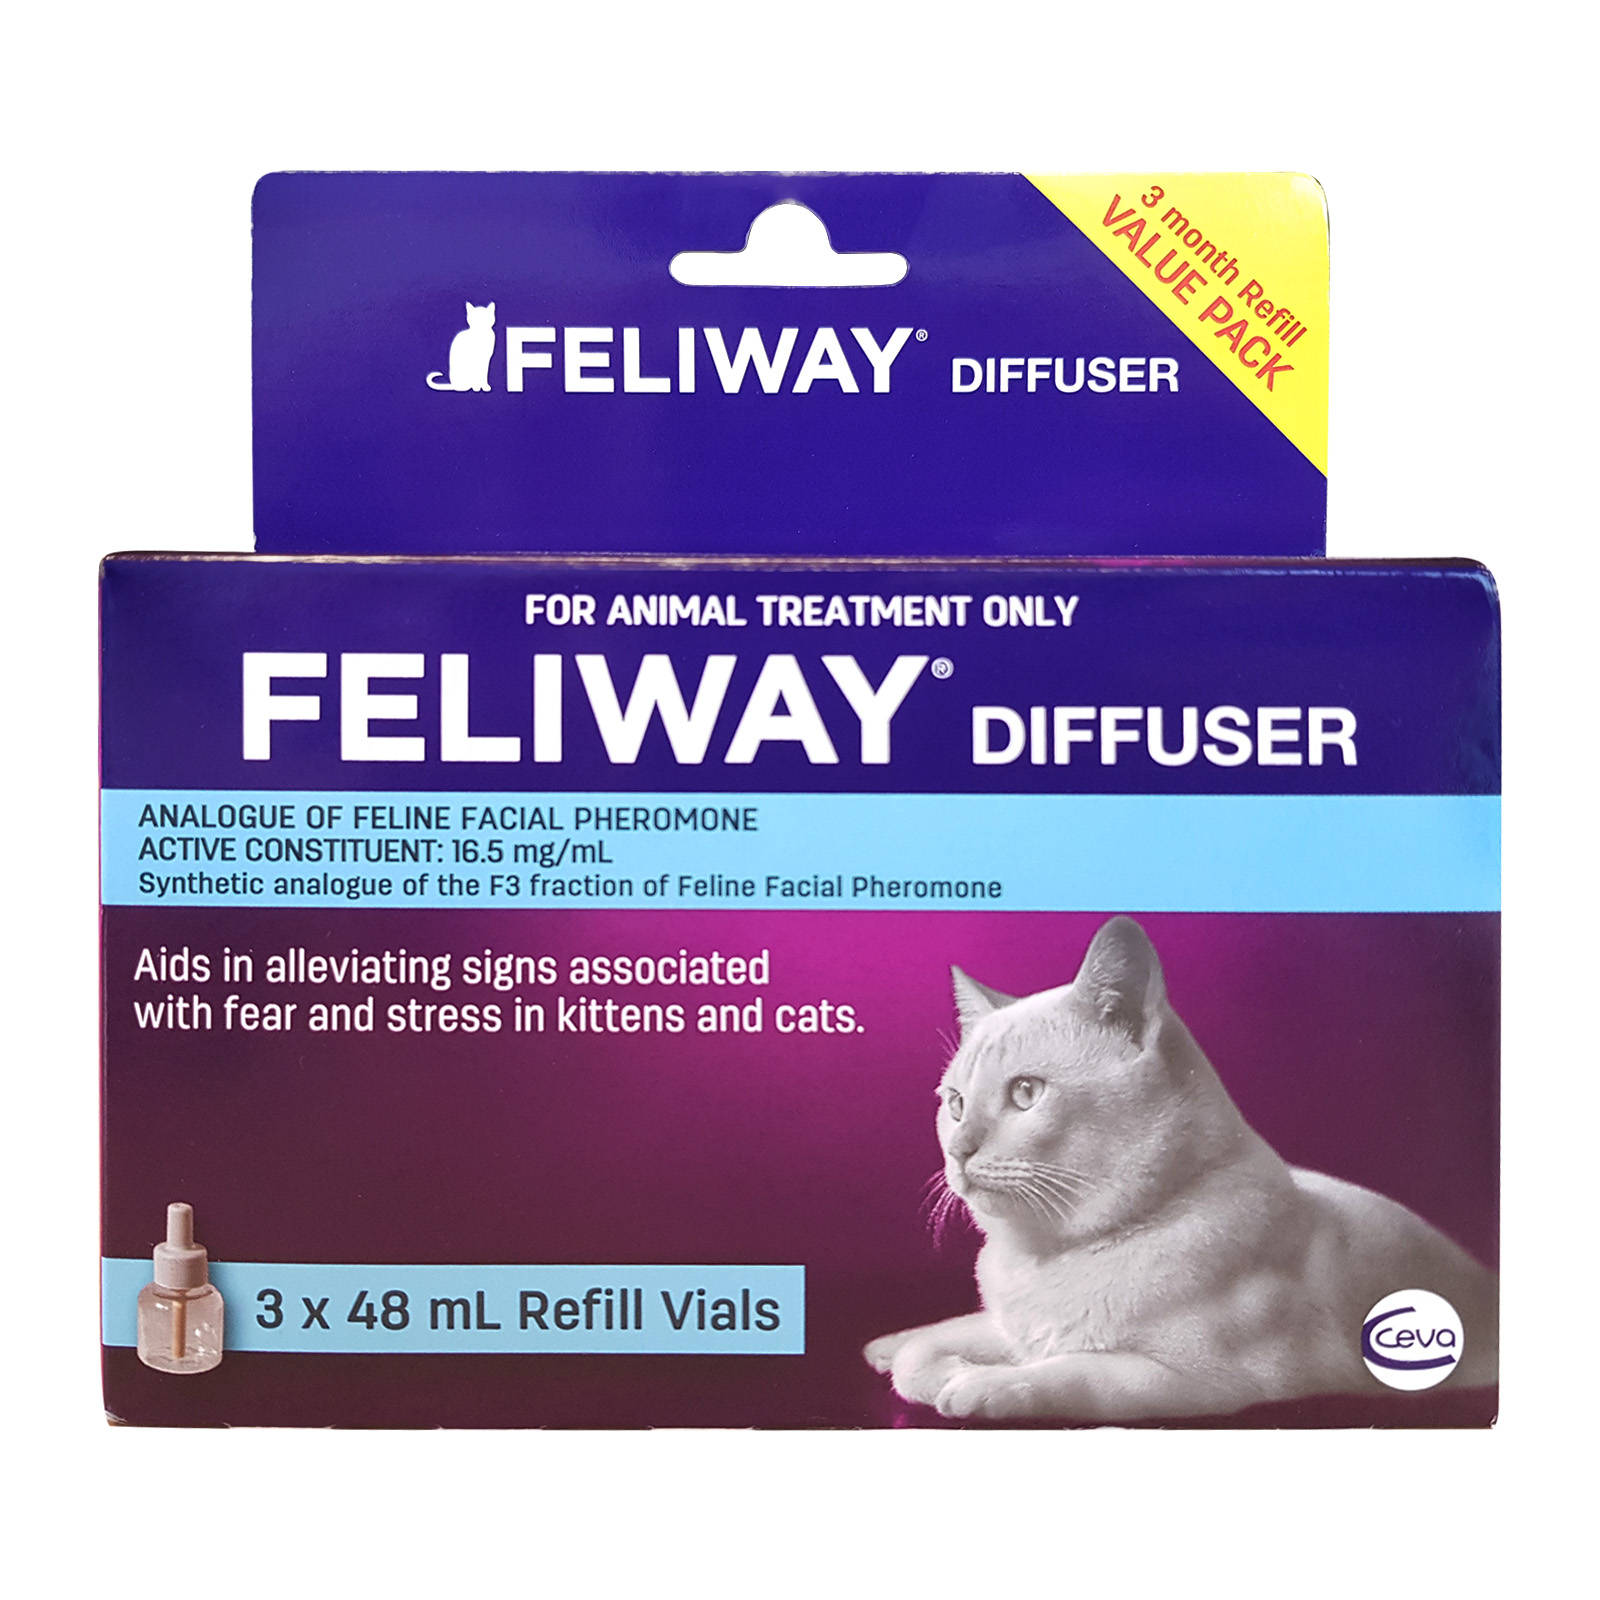 Feliway Optimum Refill 3 Pack